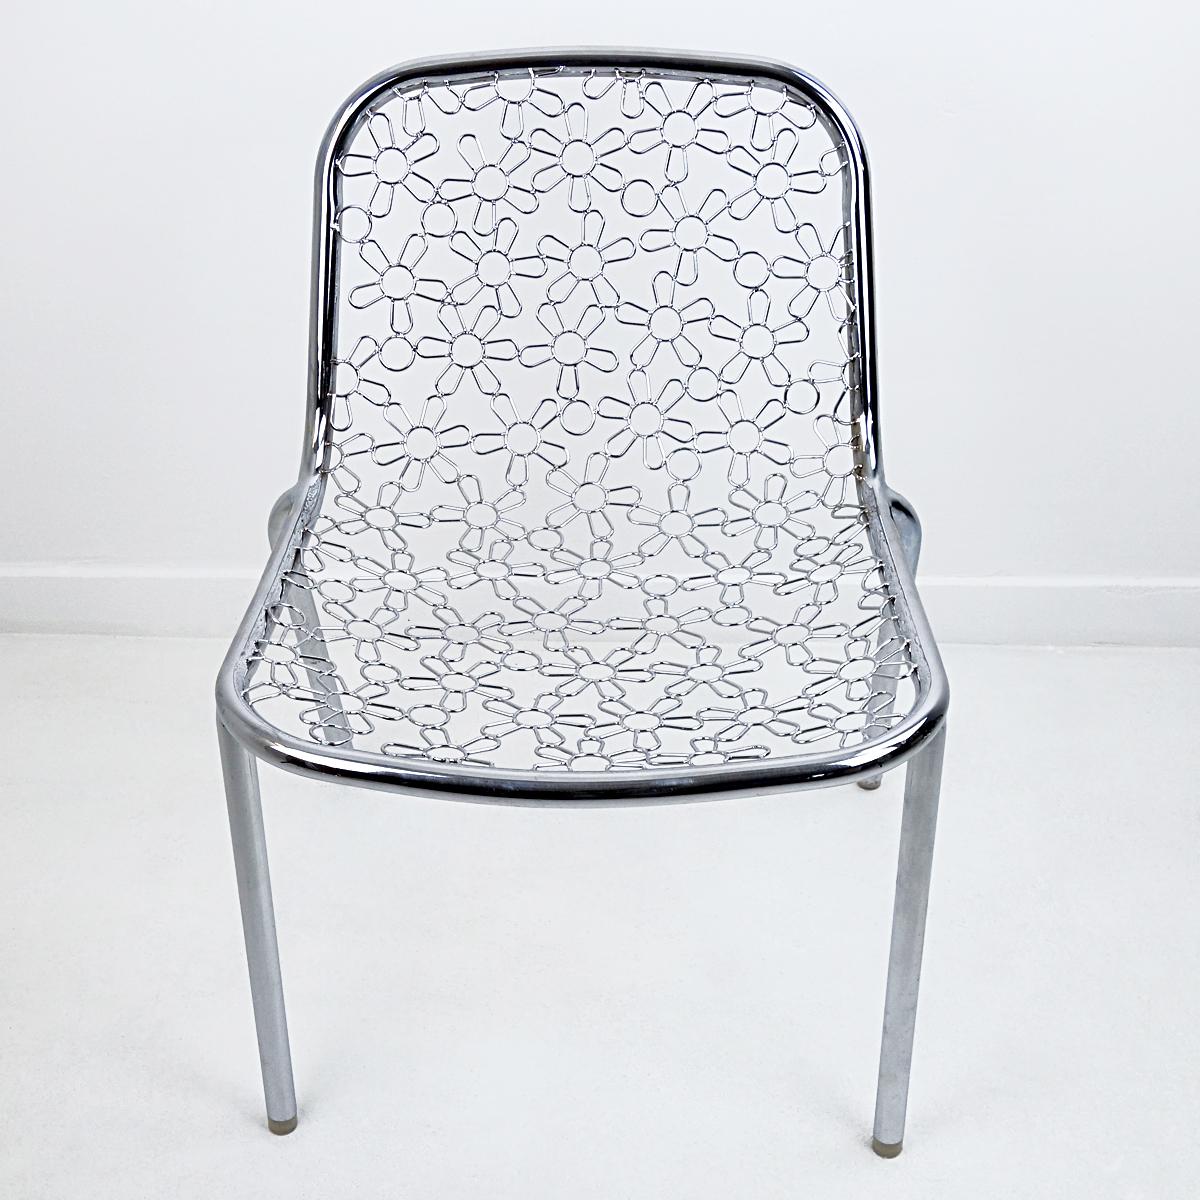 Einzigartiges Stück des weltberühmten niederländischen Designers Marcel Wanders. Es wurde 2005 bei einem Musterverkauf bei MOOOI in Amsterdam verkauft. Das Chrom hat ein Blumenmuster.
Dieser Stuhl ist nie in Produktion gegangen. Wanders entschied